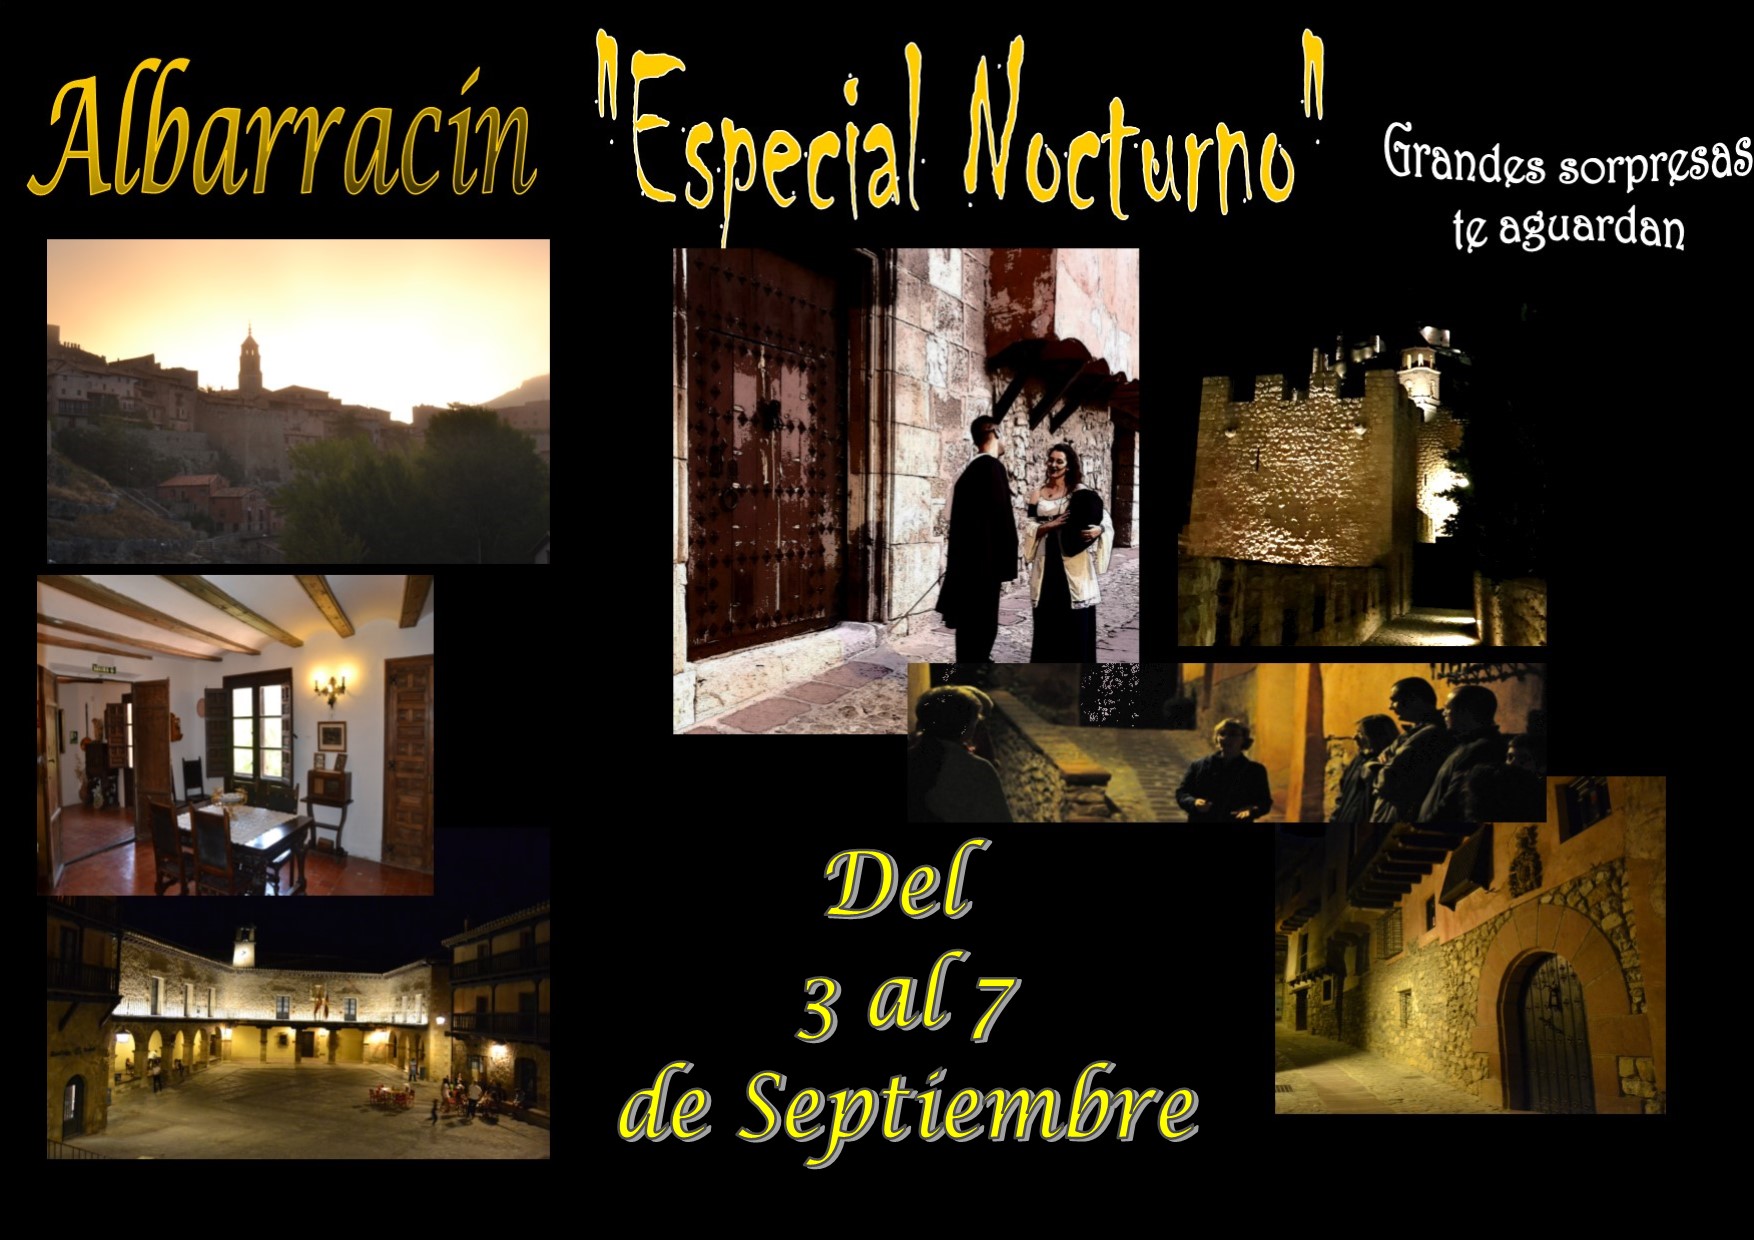 Albarracín Nocturno…del 3 al 7 de Septiembre…con sorpresas teatralizadas…no te lo pierdas!